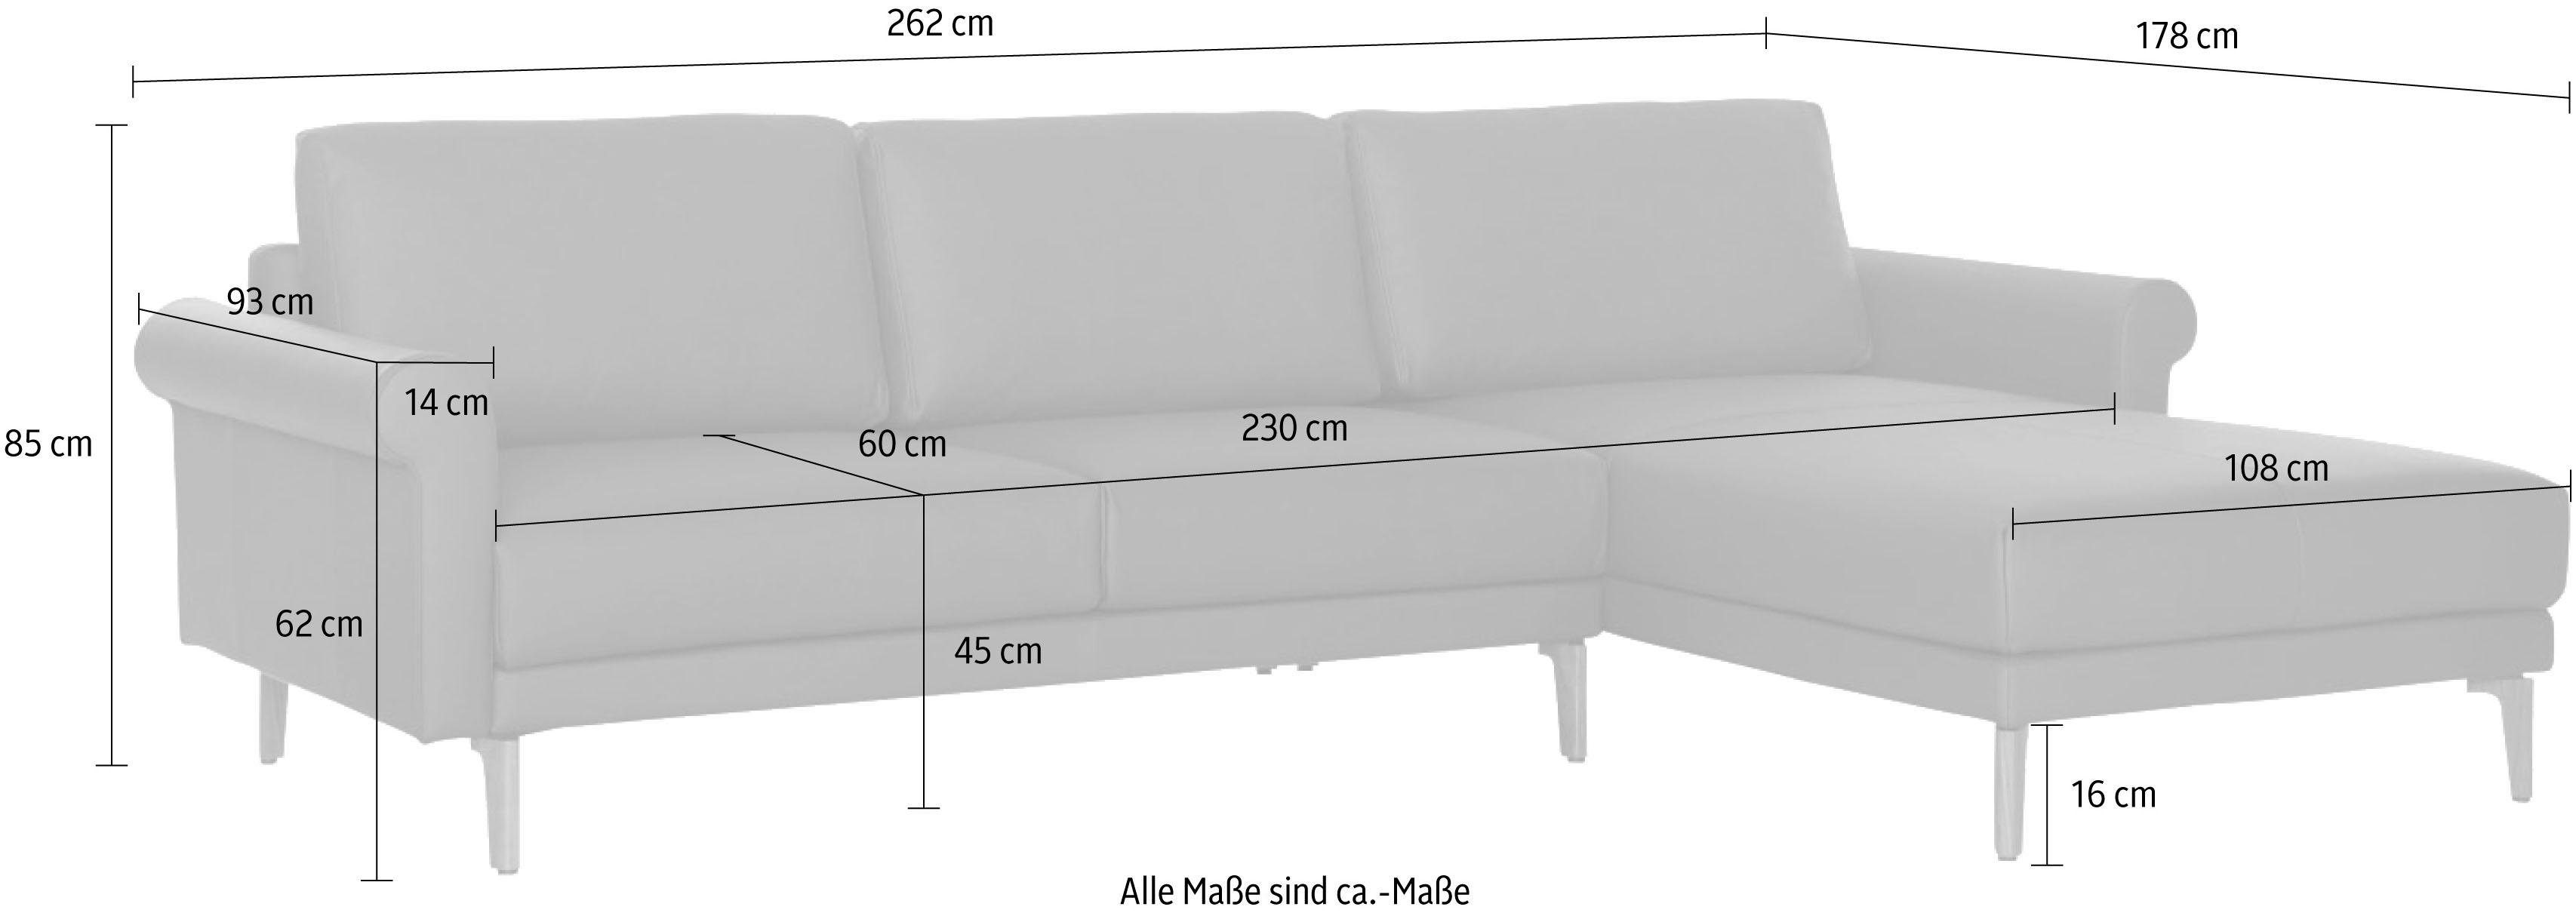 cm, Armlehne Fuß Landhaus, Nussbaum Breite 262 Schnecke sofa hs.450, hülsta Ecksofa modern